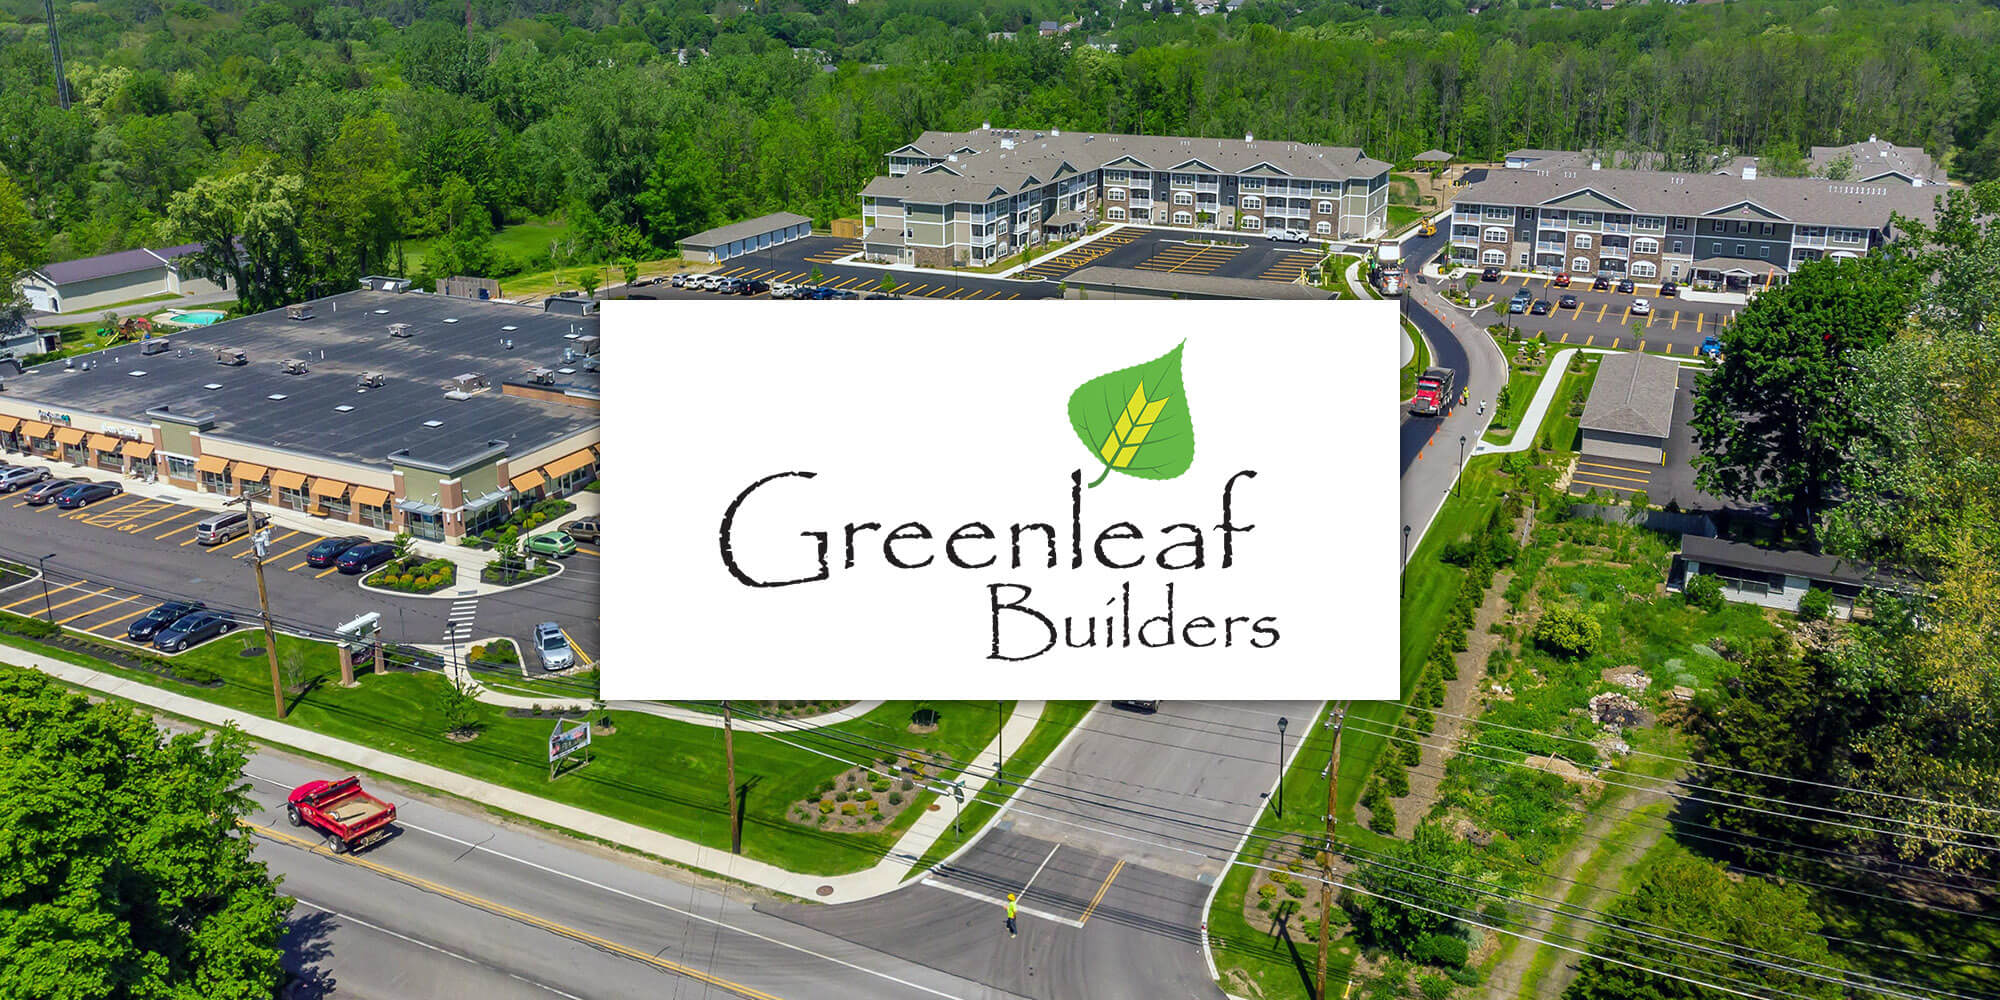 Greenleaf Builders